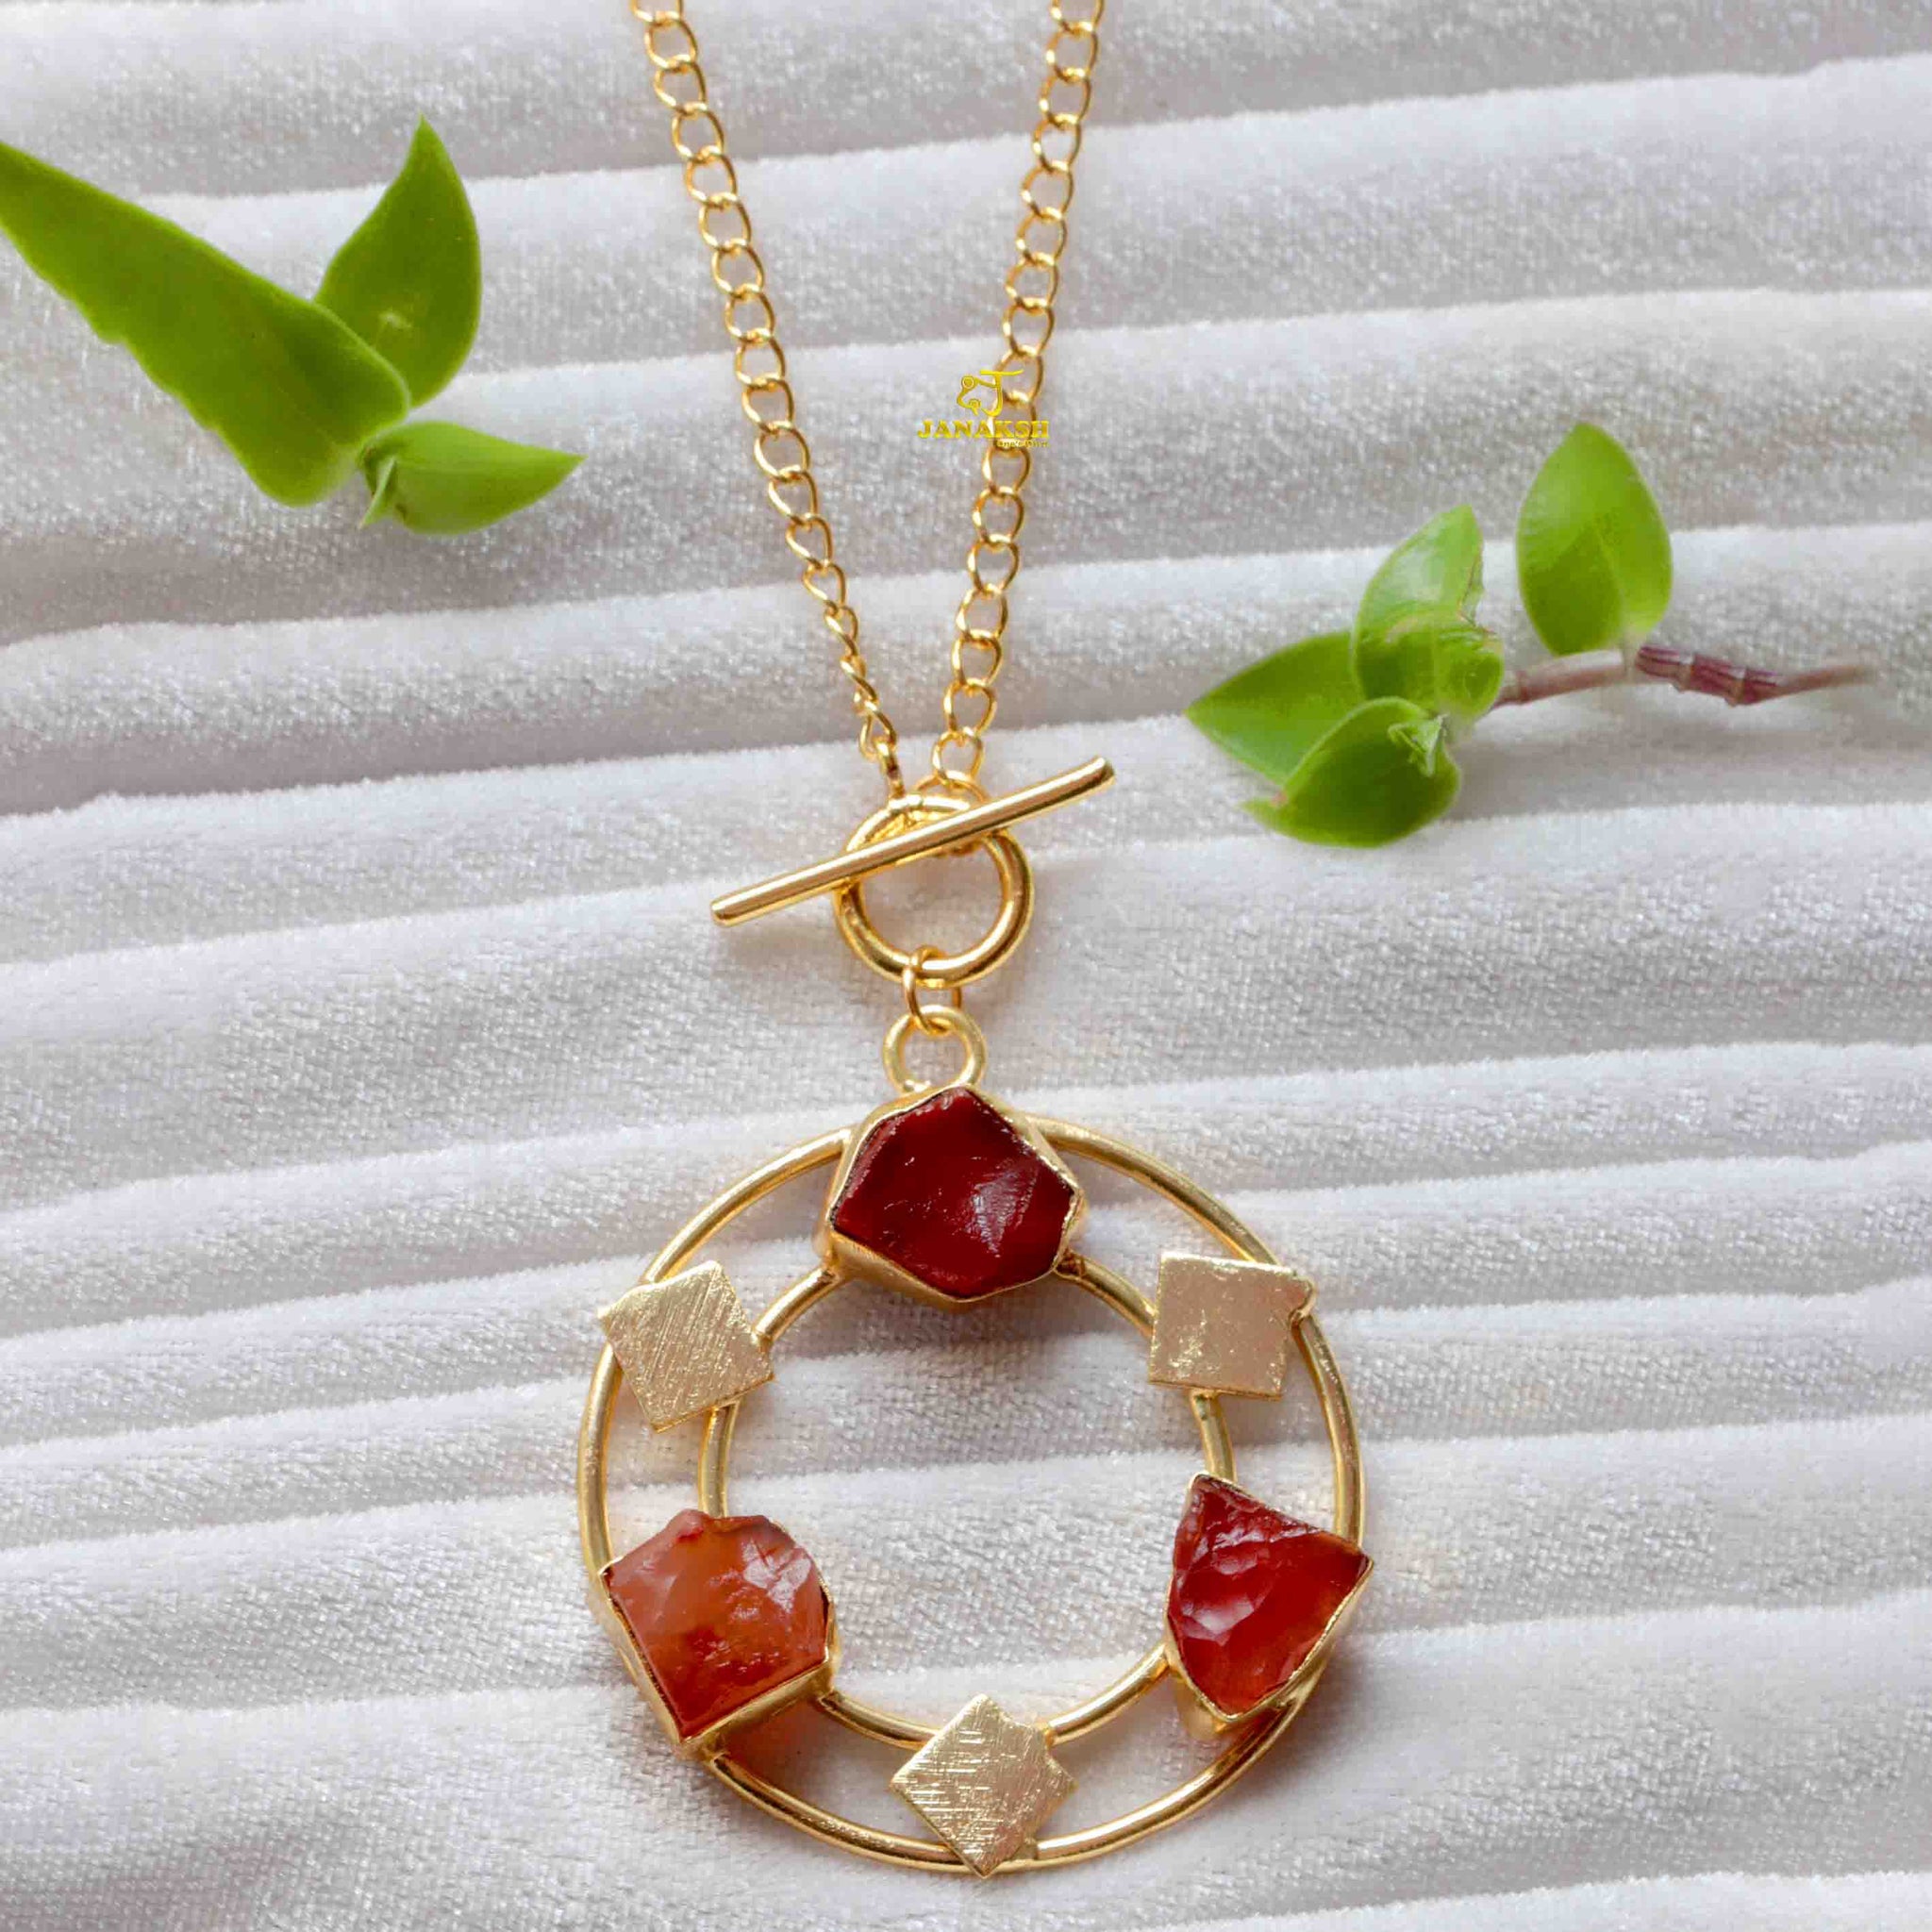 Janaksh raw uncut semiprecious gemstones round tie style statement tie chain